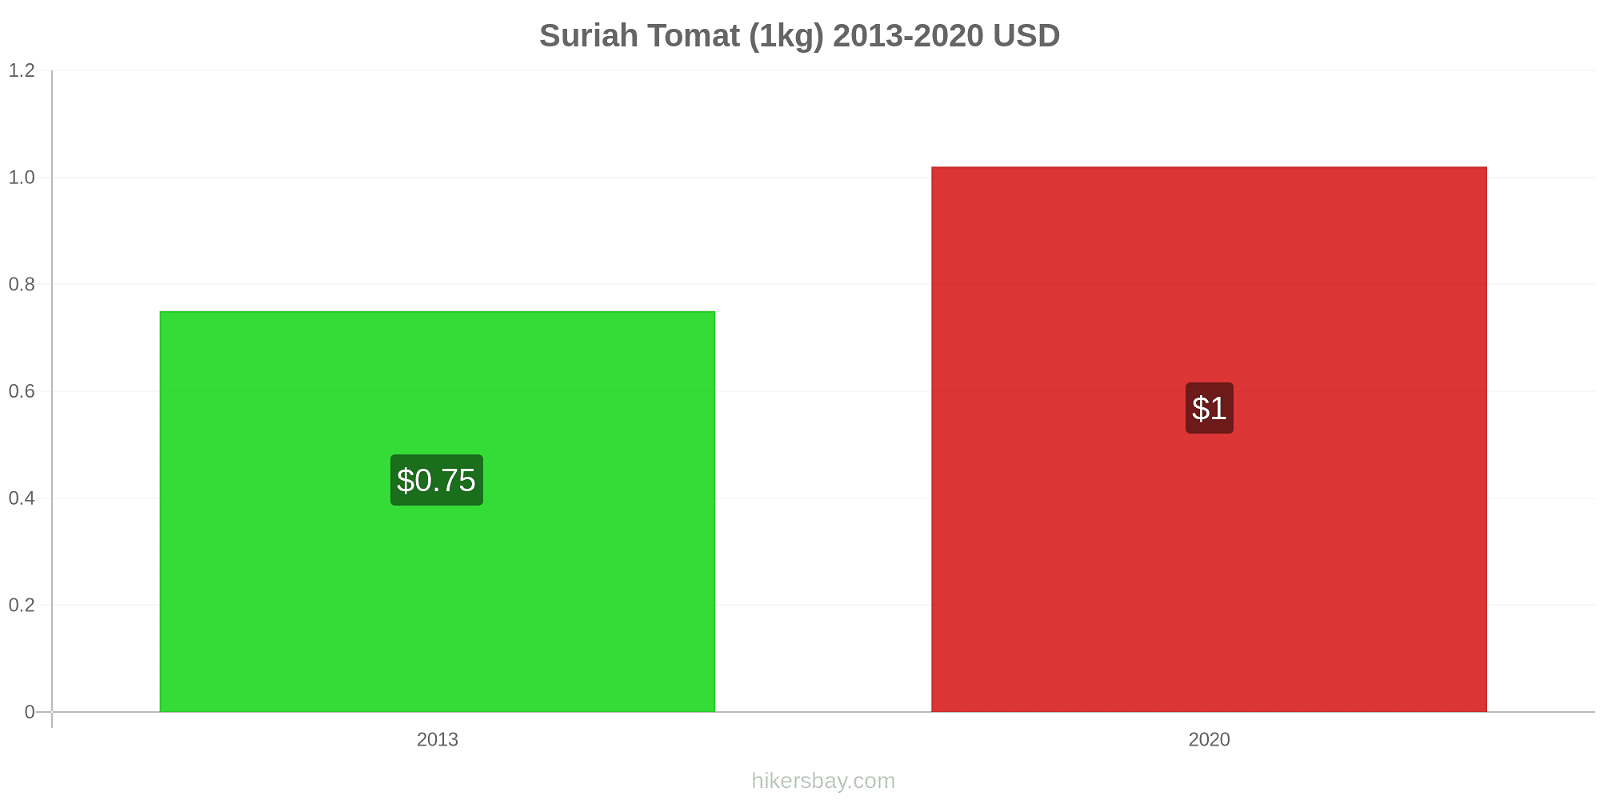 Suriah perubahan harga Tomat (1kg) hikersbay.com